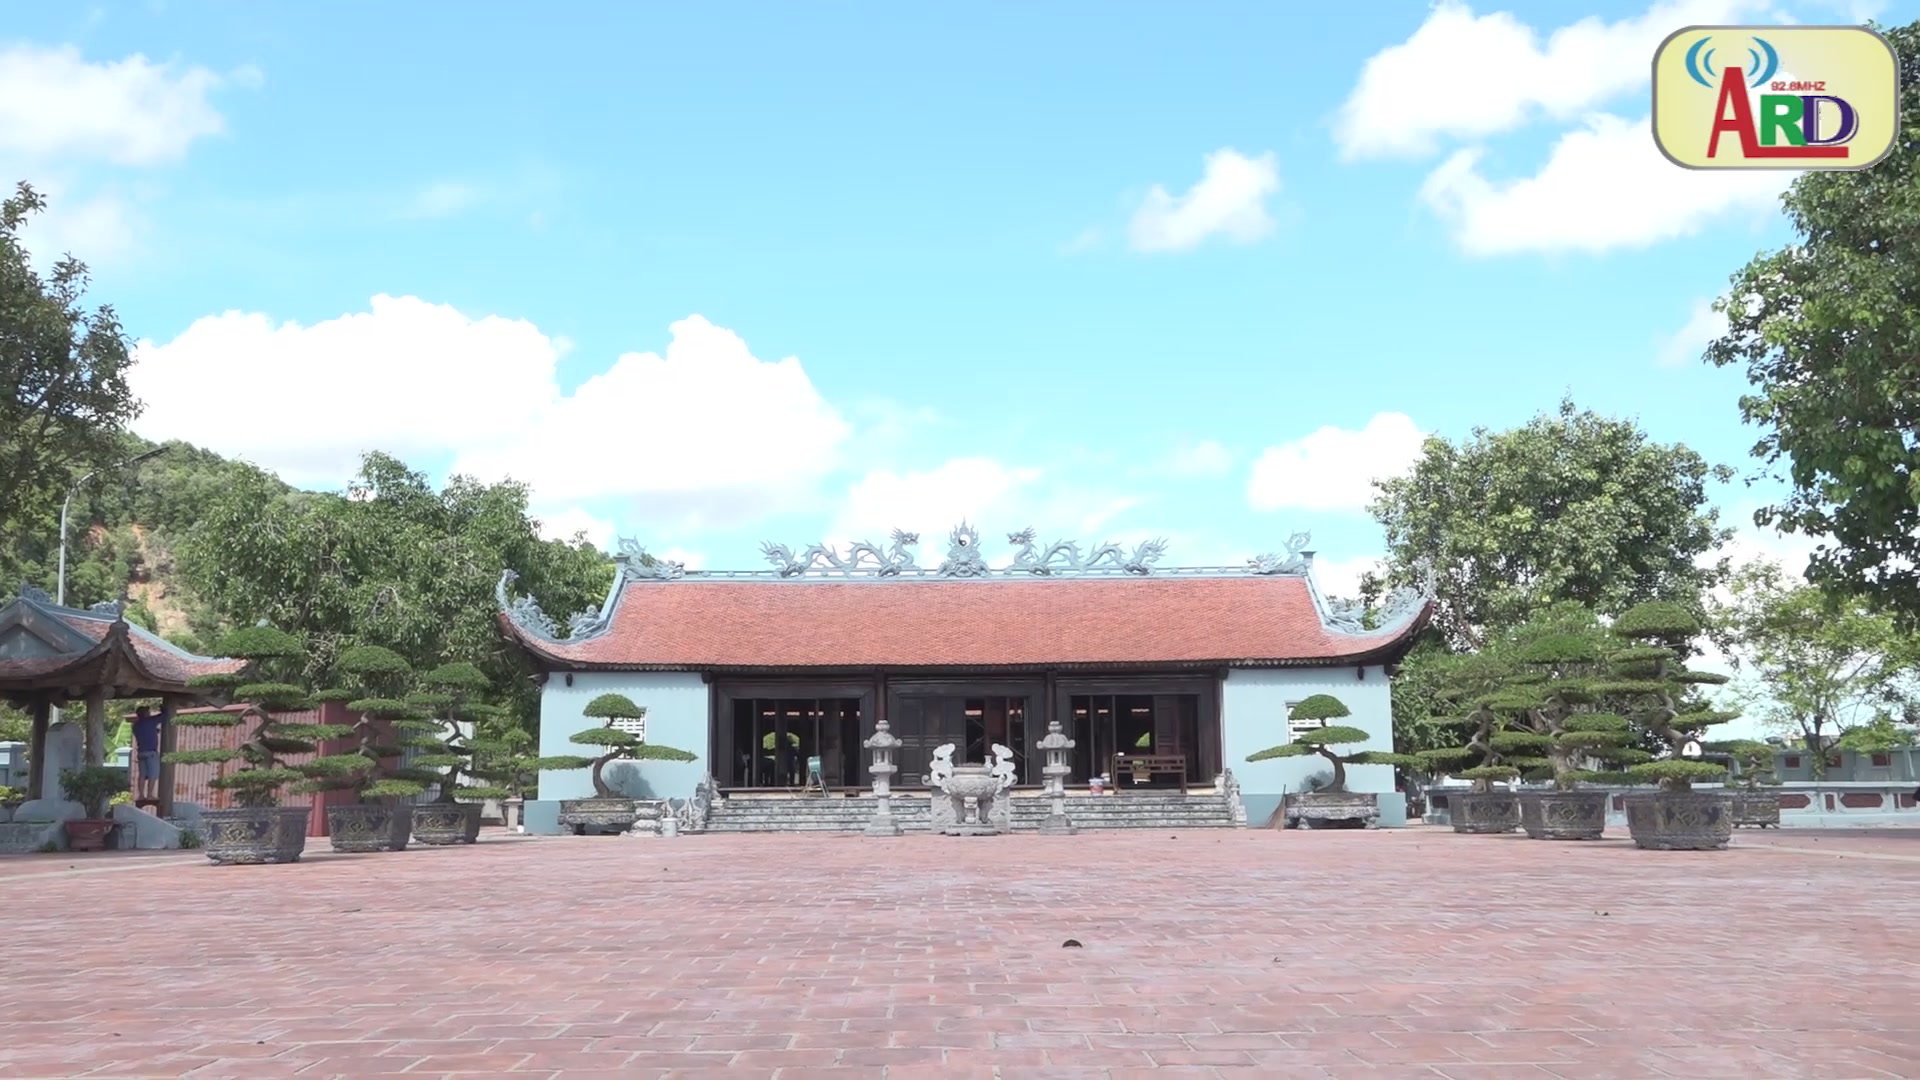  Đền thờ Trần Tất Văn và Đình Nguyệt Áng được xếp hạng di tích lịch sử quốc gia